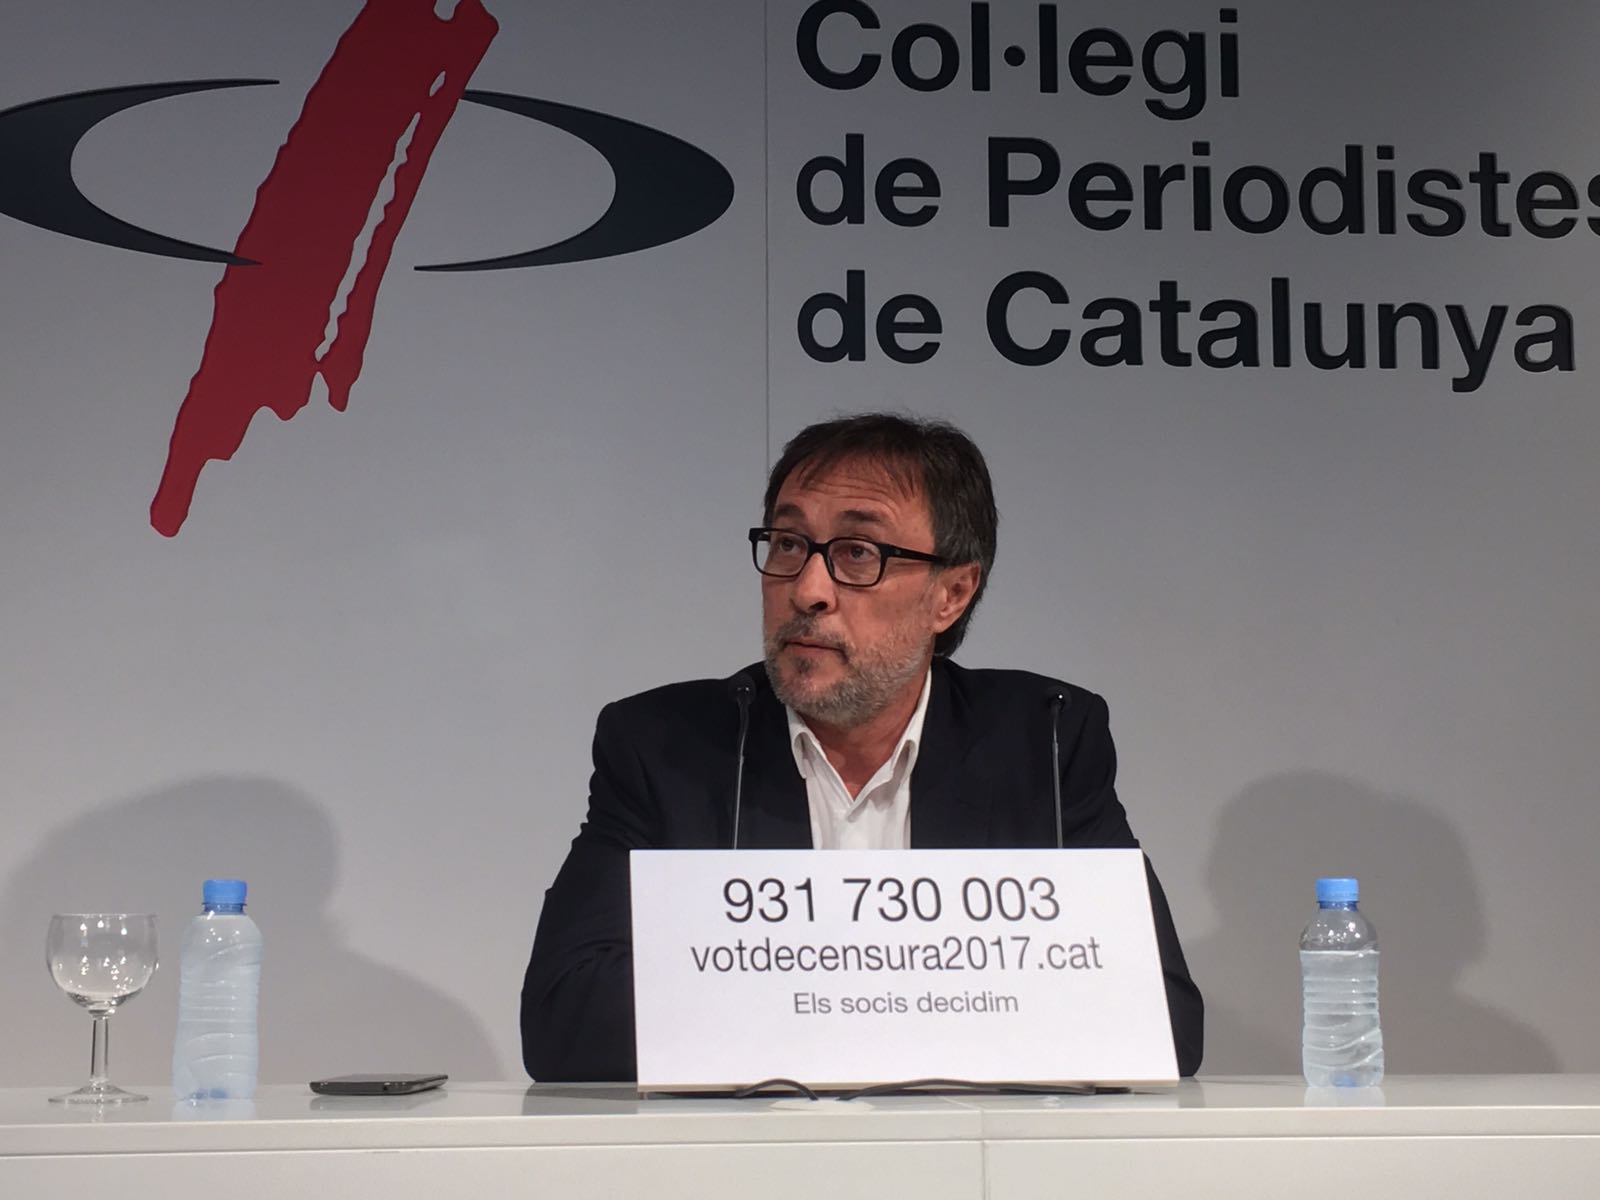 Benedito reuneix les adhesions suficients per iniciar la moció de censura